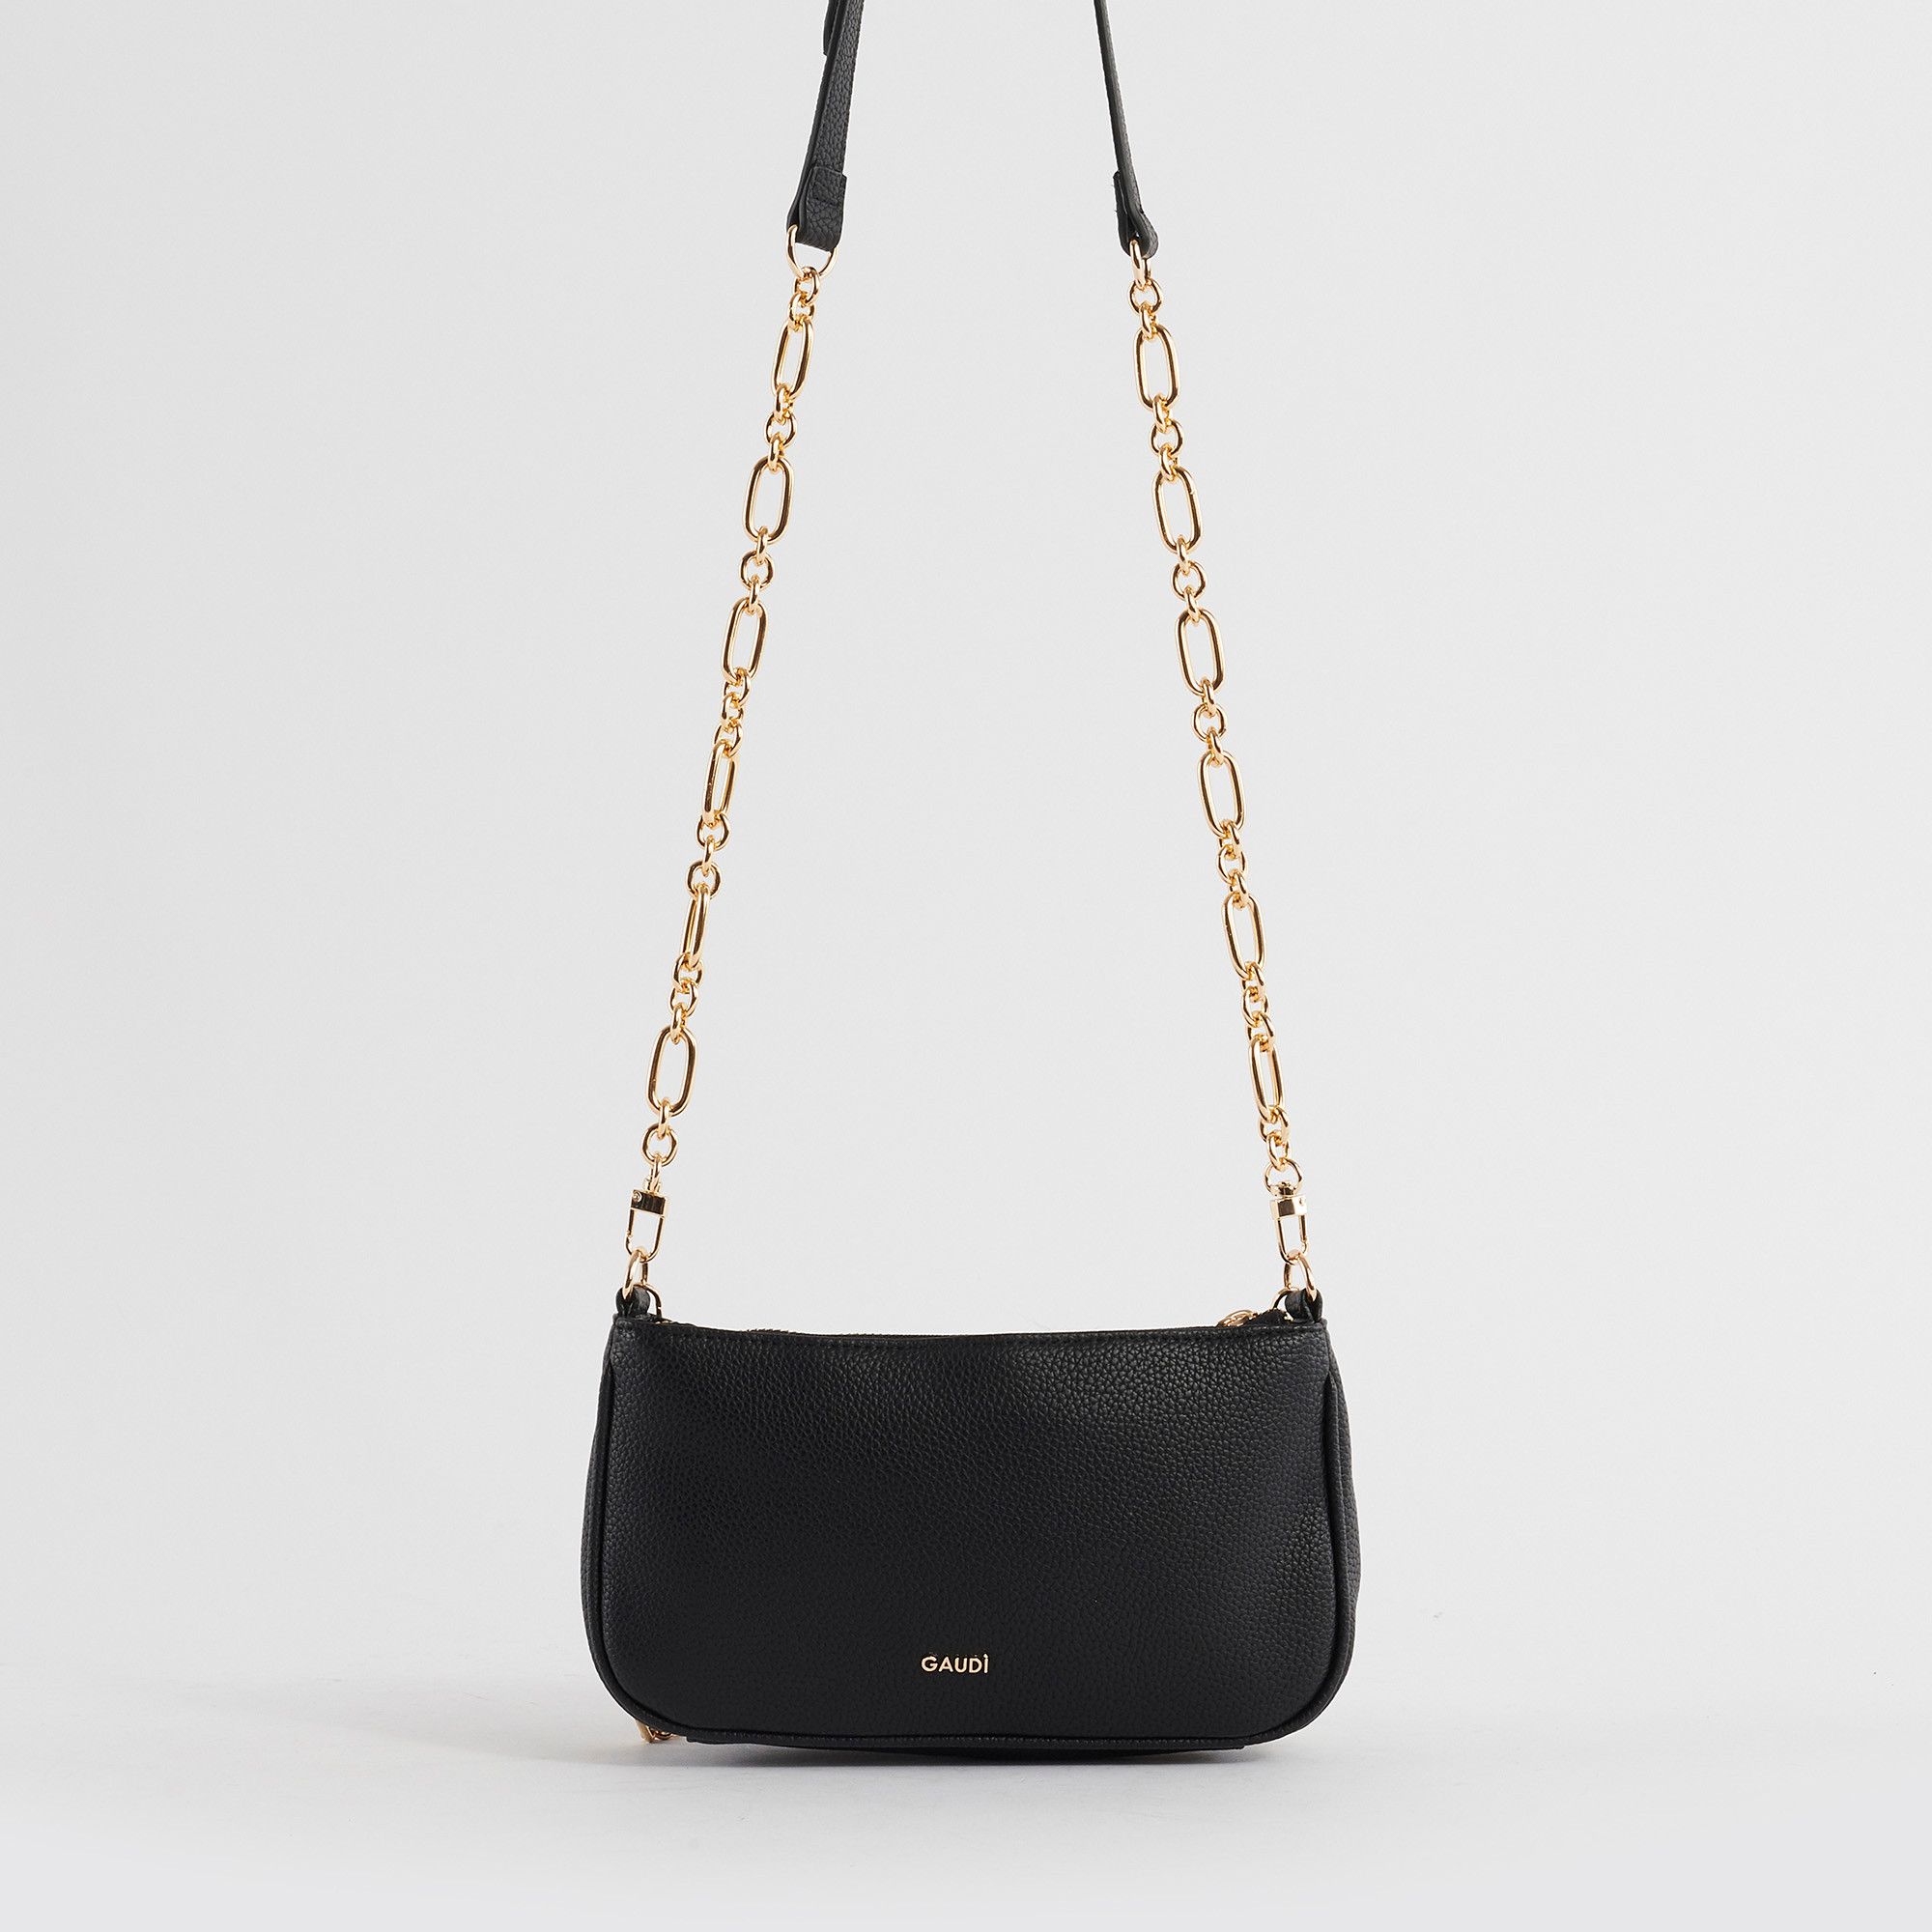 Gaudì - Venice shoulder bag, Black, large image number 2